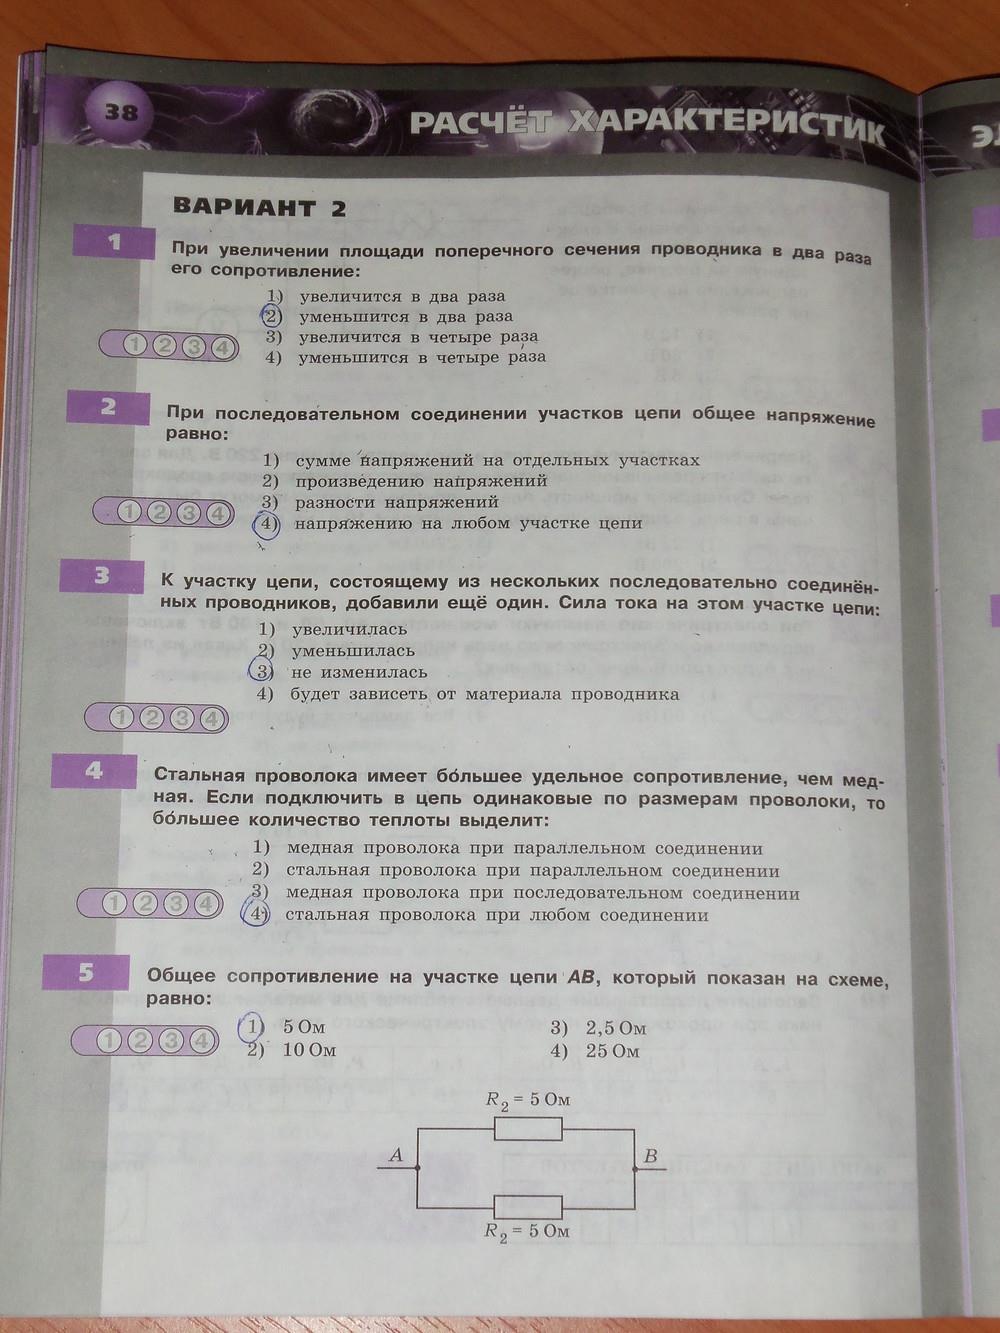 гдз 8 класс тетрадь-экзаменатор страница 38 физика Жумаев